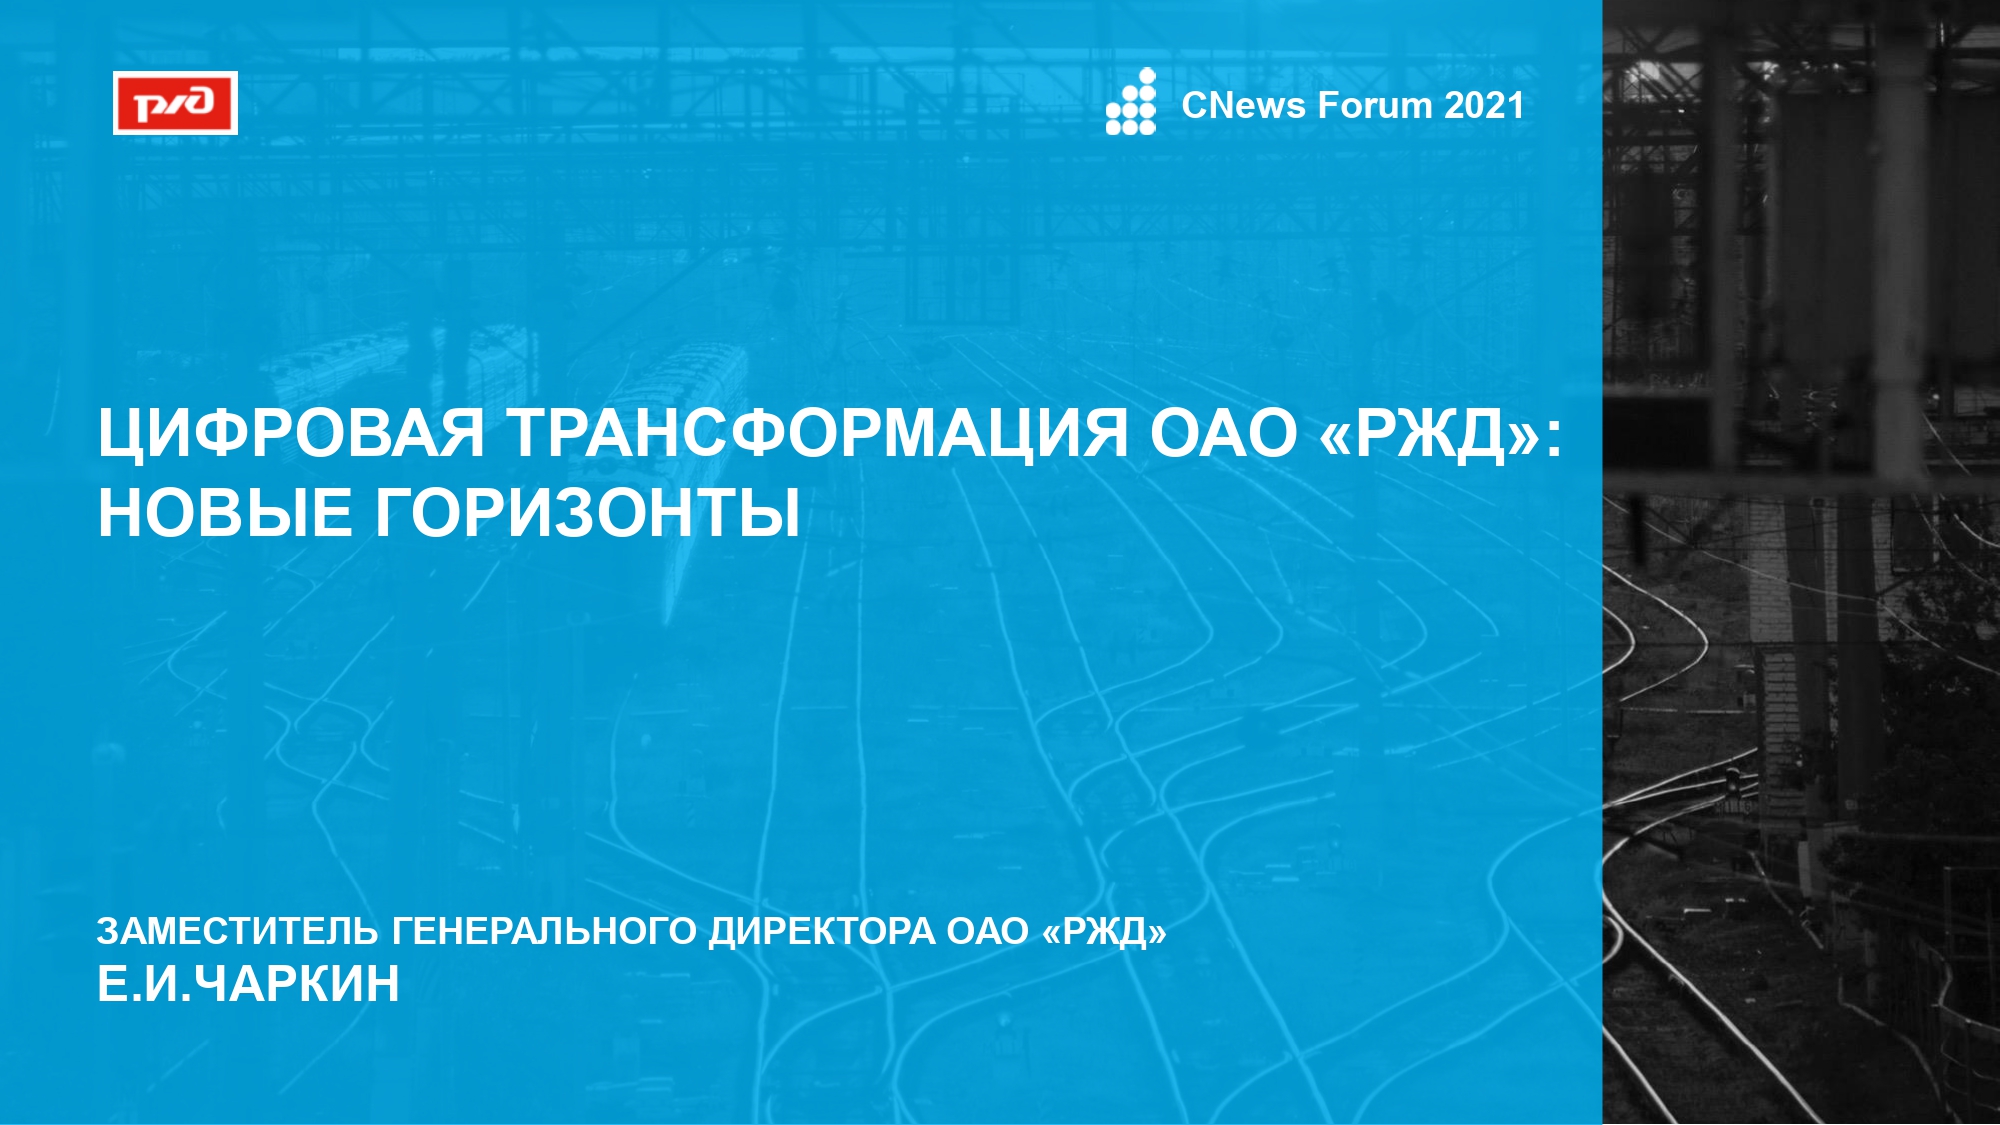 12.prezentatsiya_eicharkina_cnews_forum_2021_09_11_2021_final_page-0001.jpg